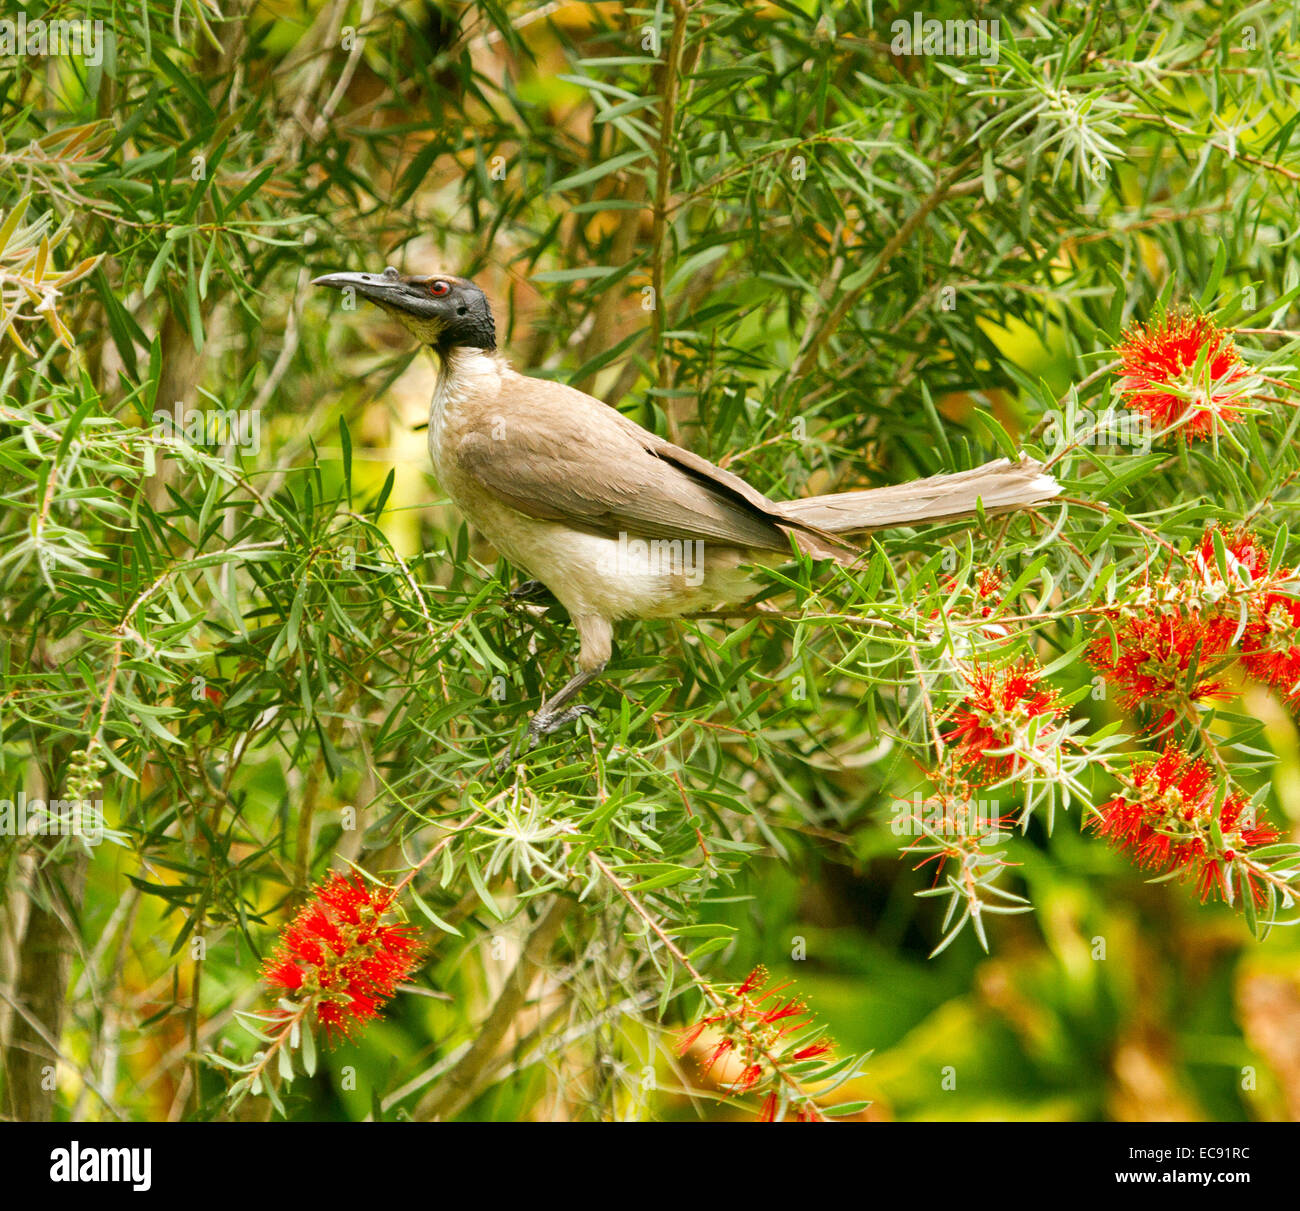 Frère bruyant oiseau, Philemon corniculatus, méliphage australienne se nourrissant de fleurs rouge de bottlebrush Callistemon / tree Banque D'Images